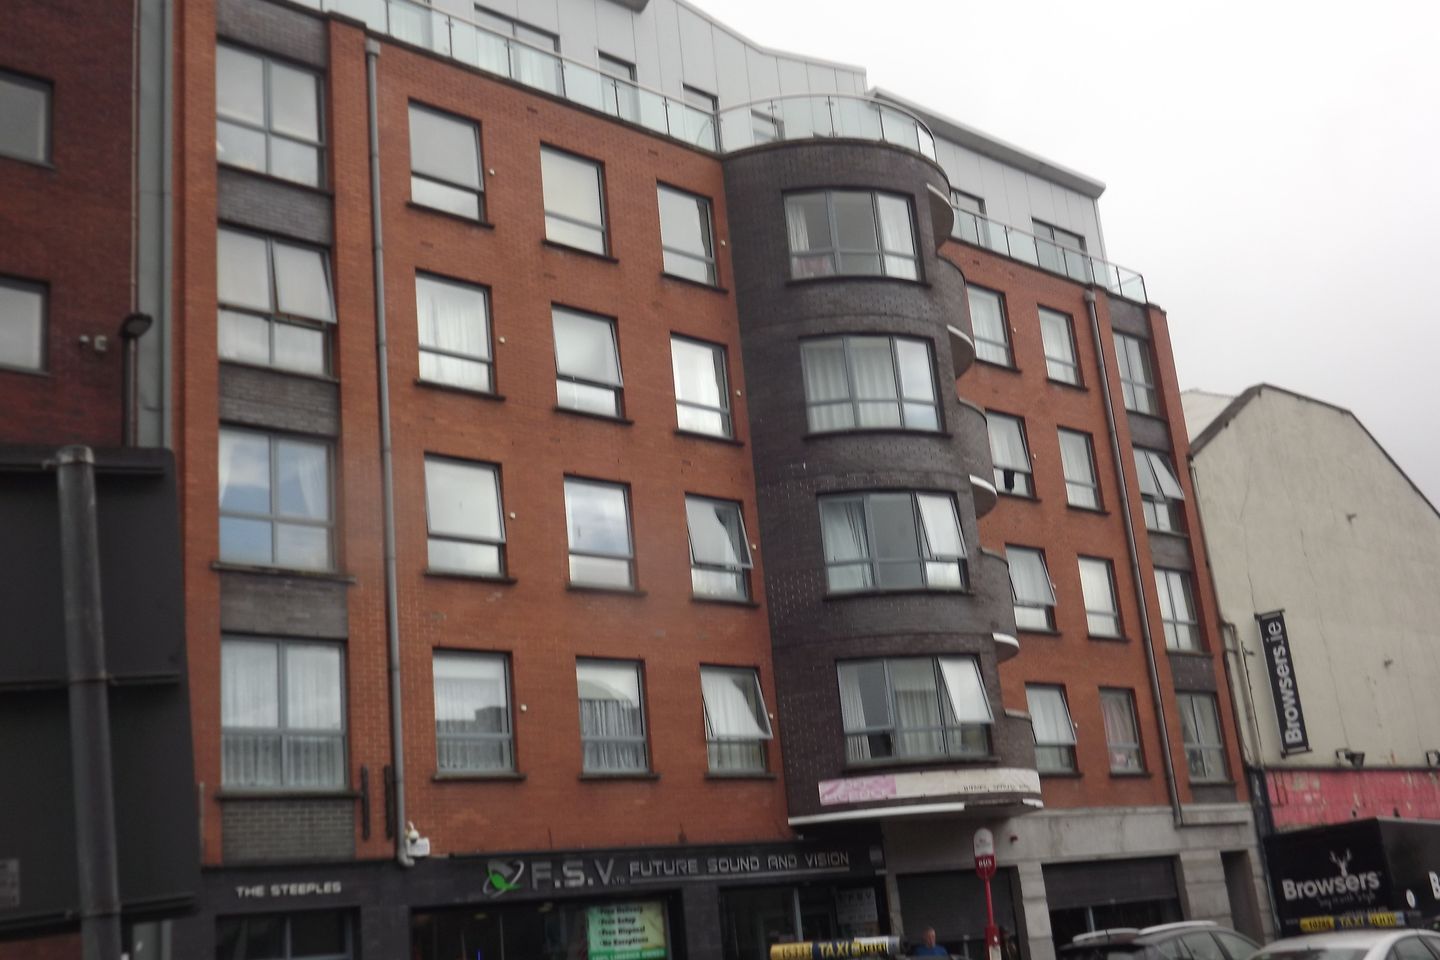 Apartment 3, The Steeples, Limerick City, Co. Limerick, V94V521